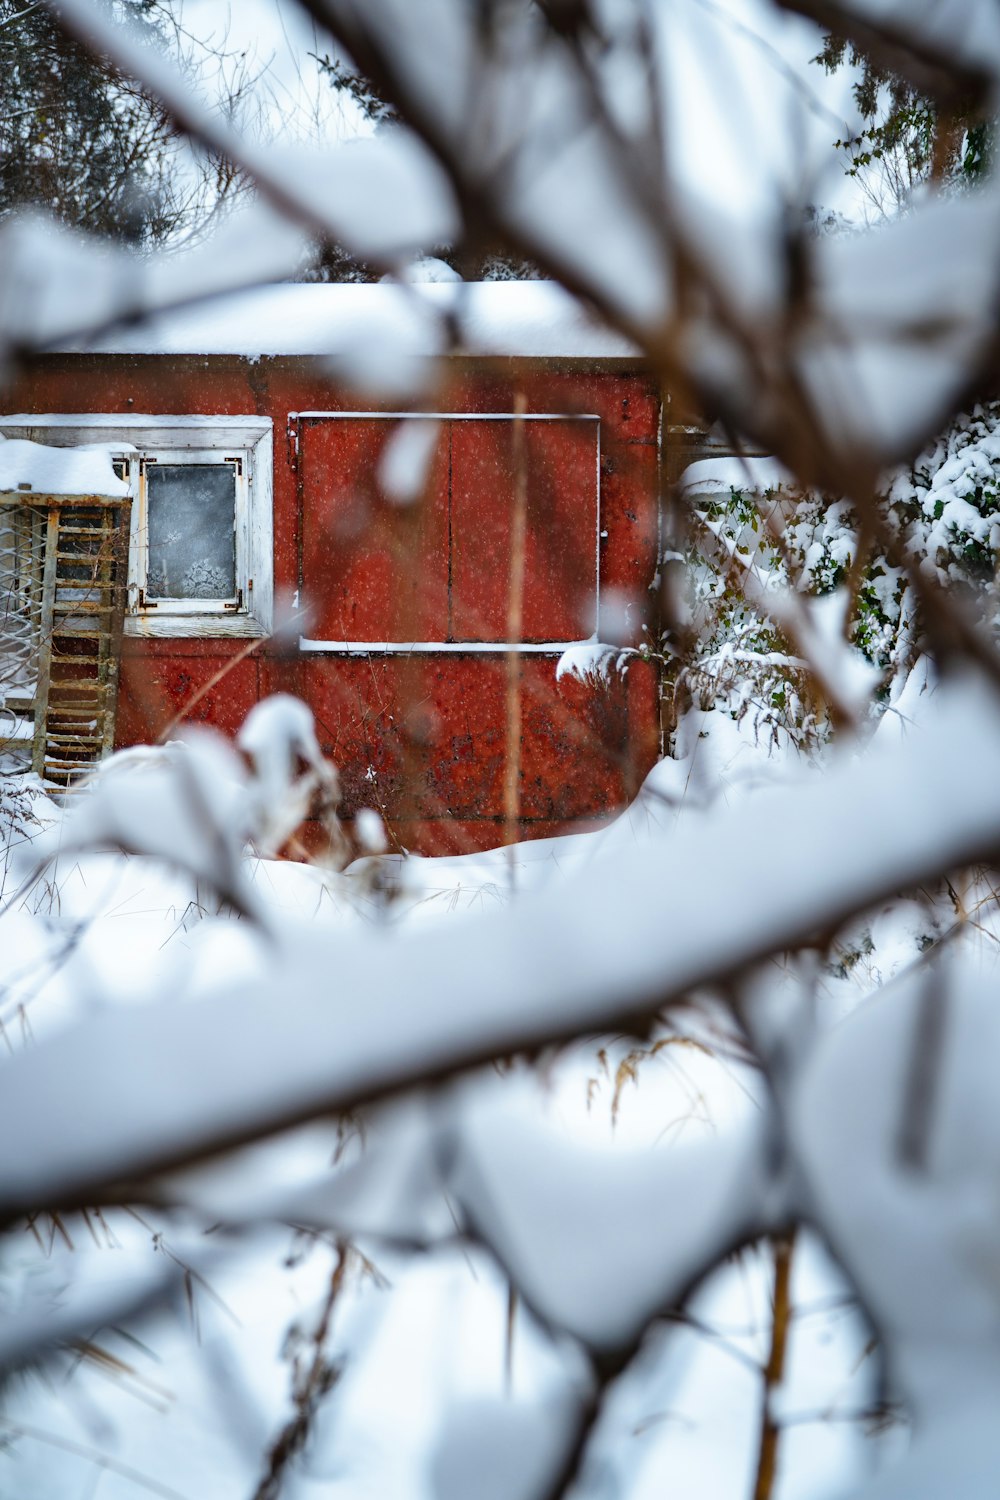 ein rotes Gebäude, das mitten in einem schneebedeckten Wald steht